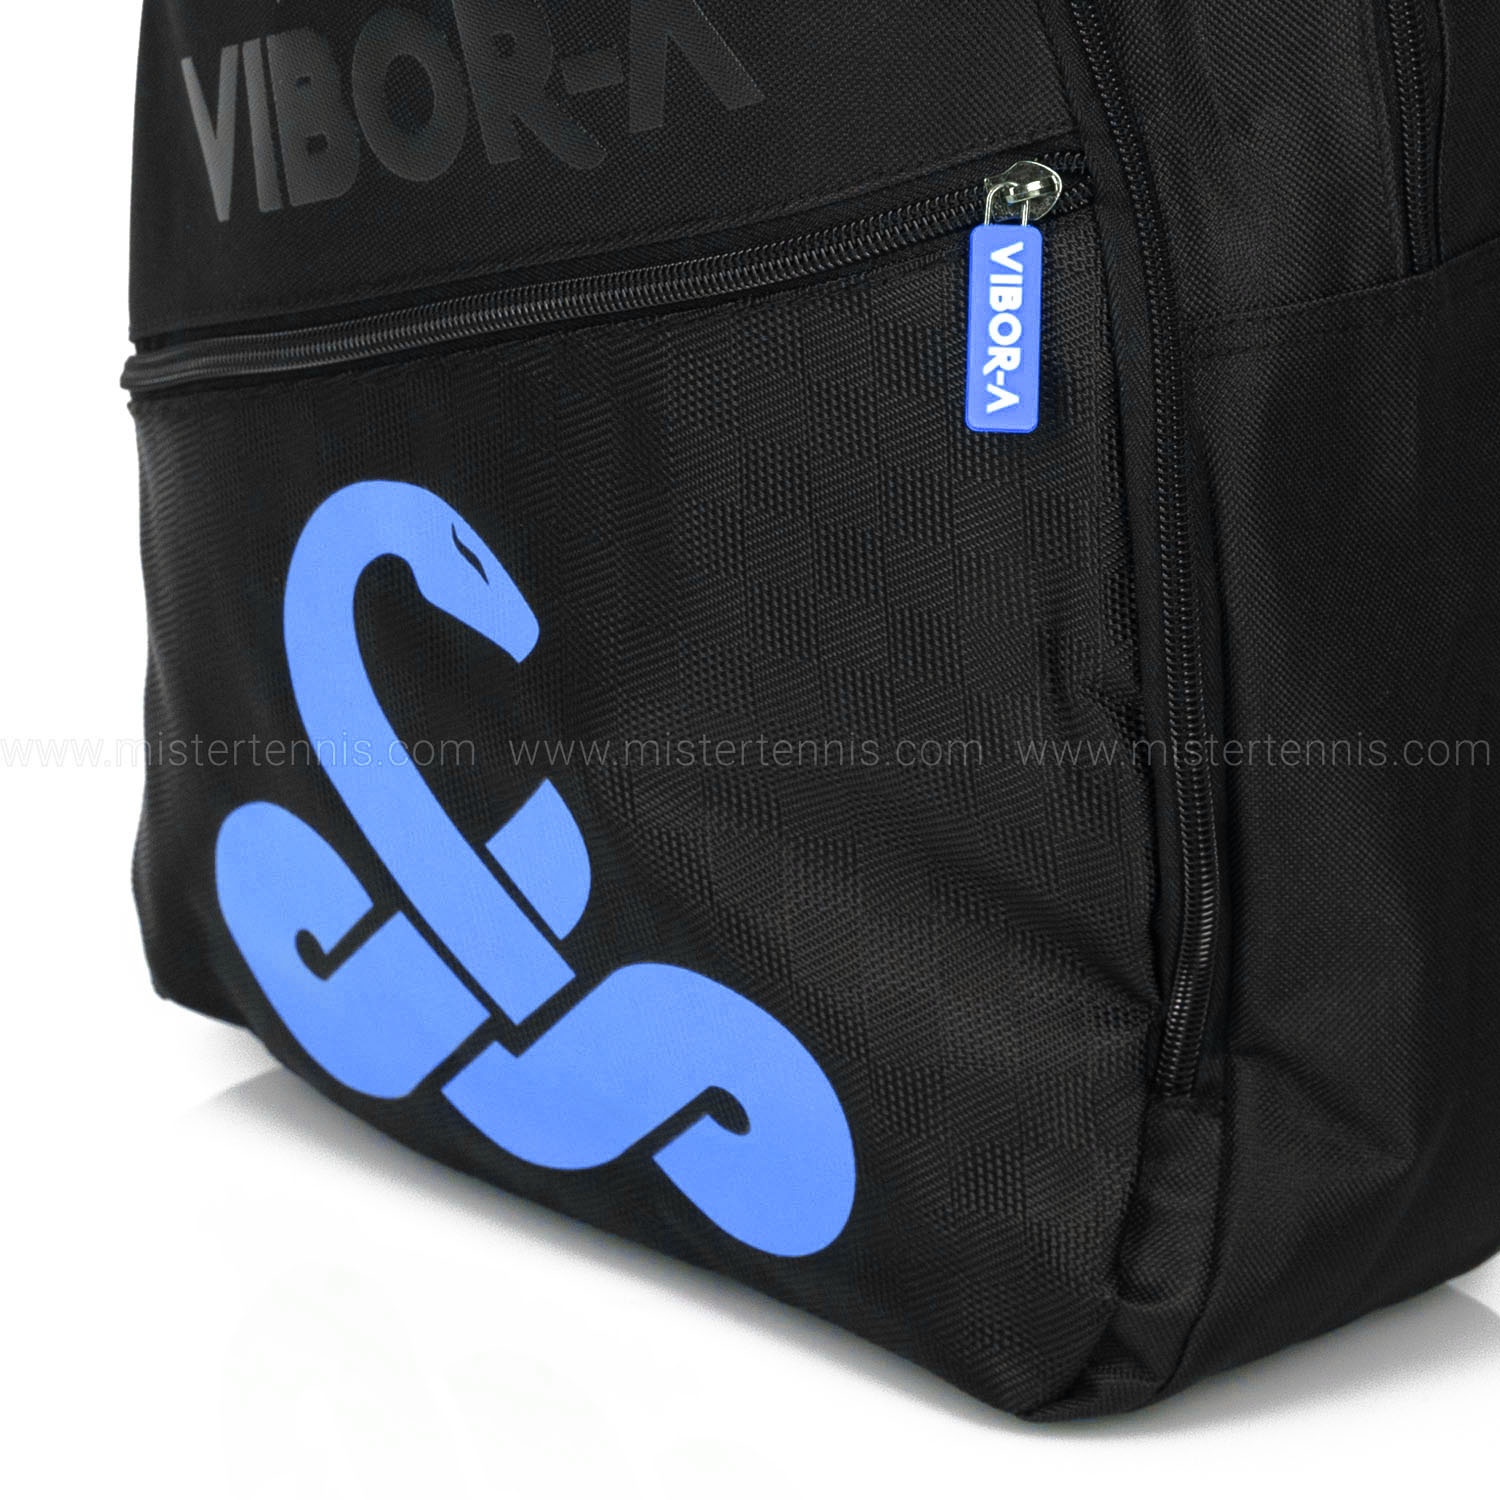 Vibor-A Arco Iris Backpack - Azul